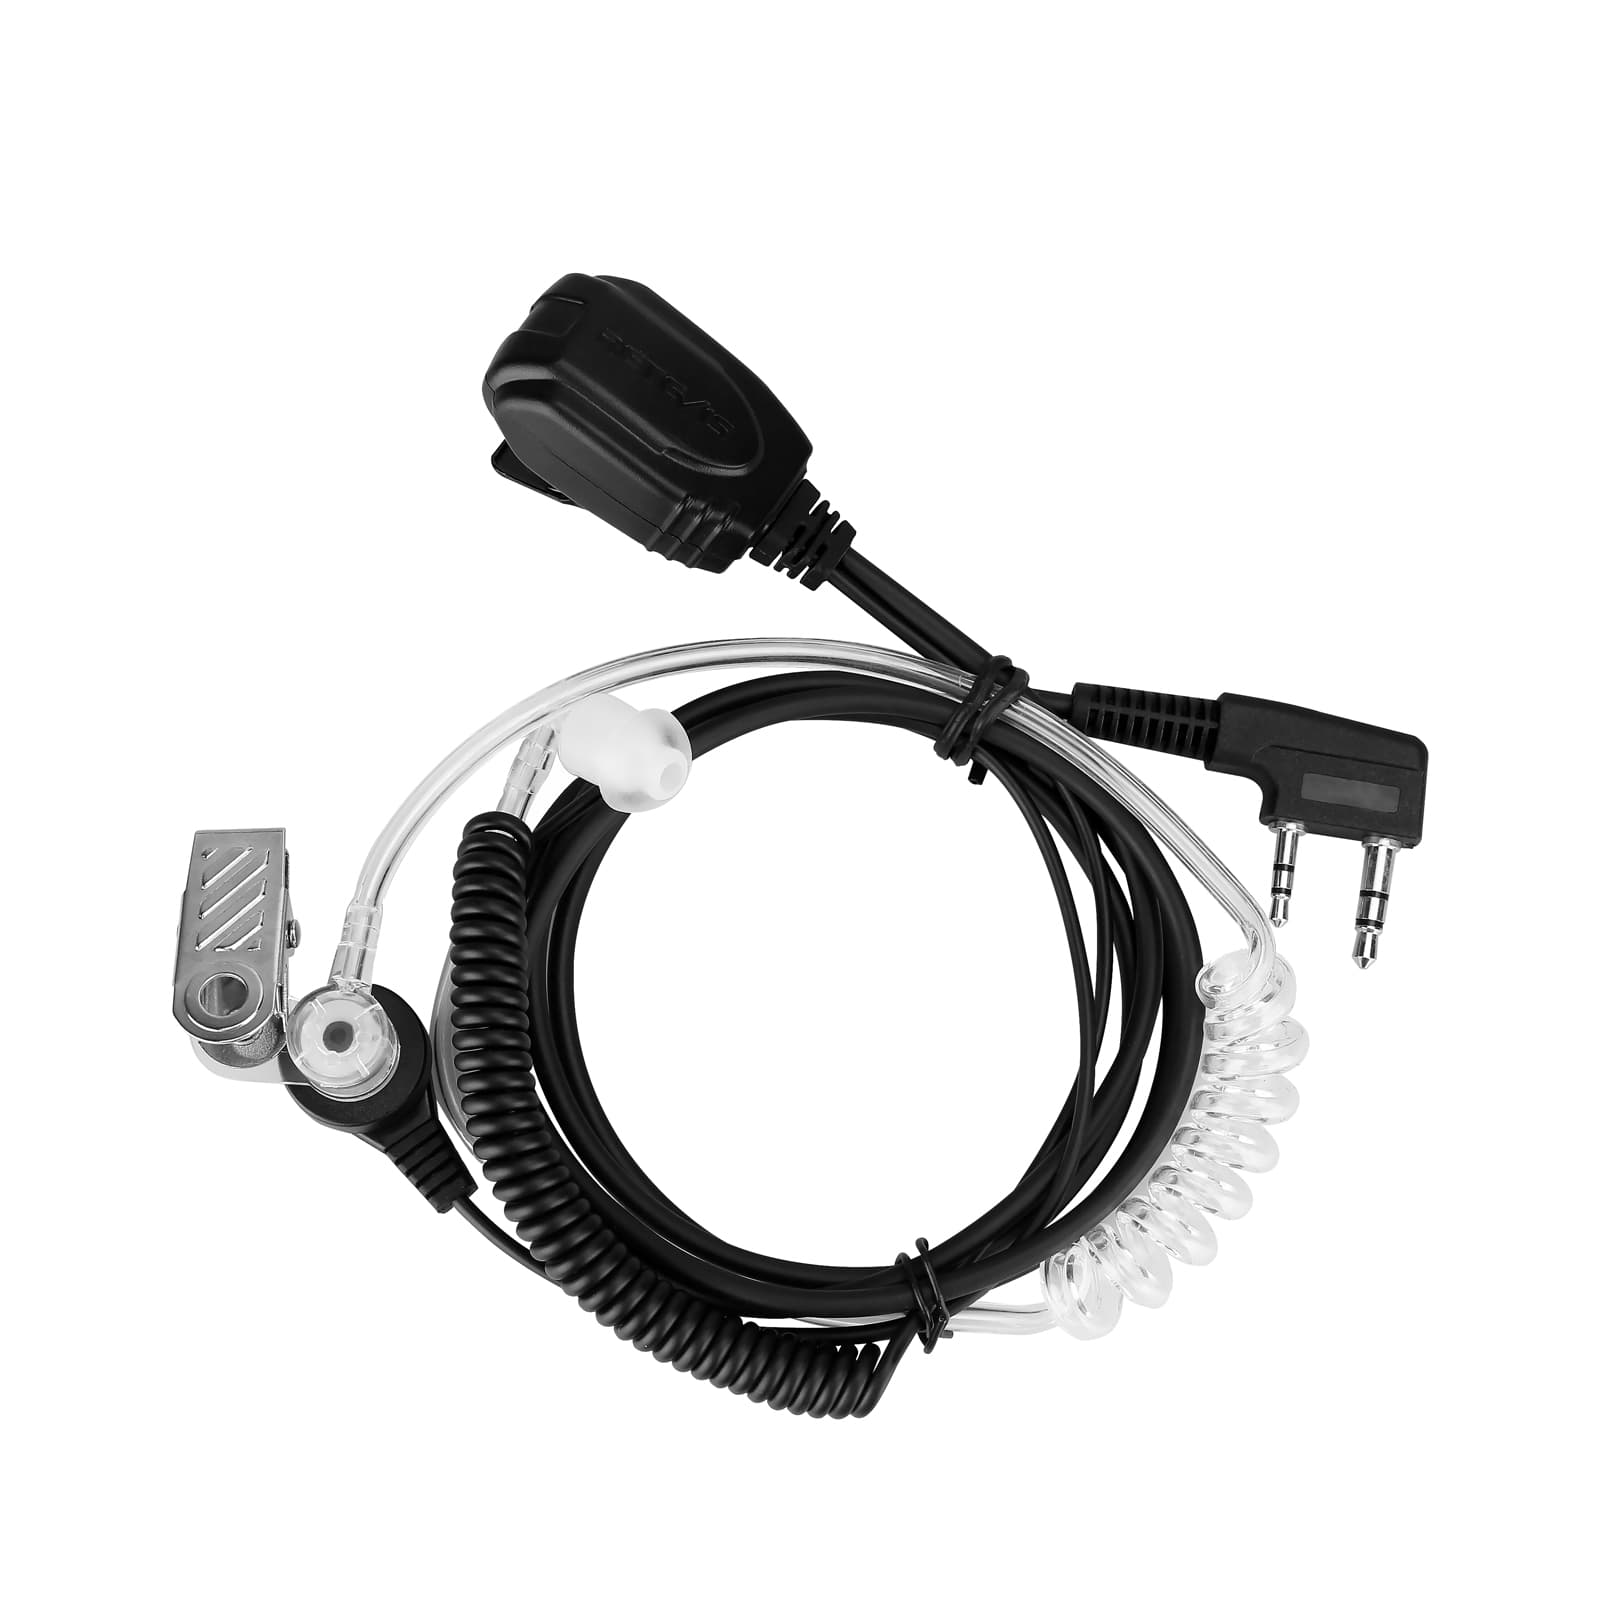 Retevis EAK005 Surveillance Earpiece with Coiled Top Cable